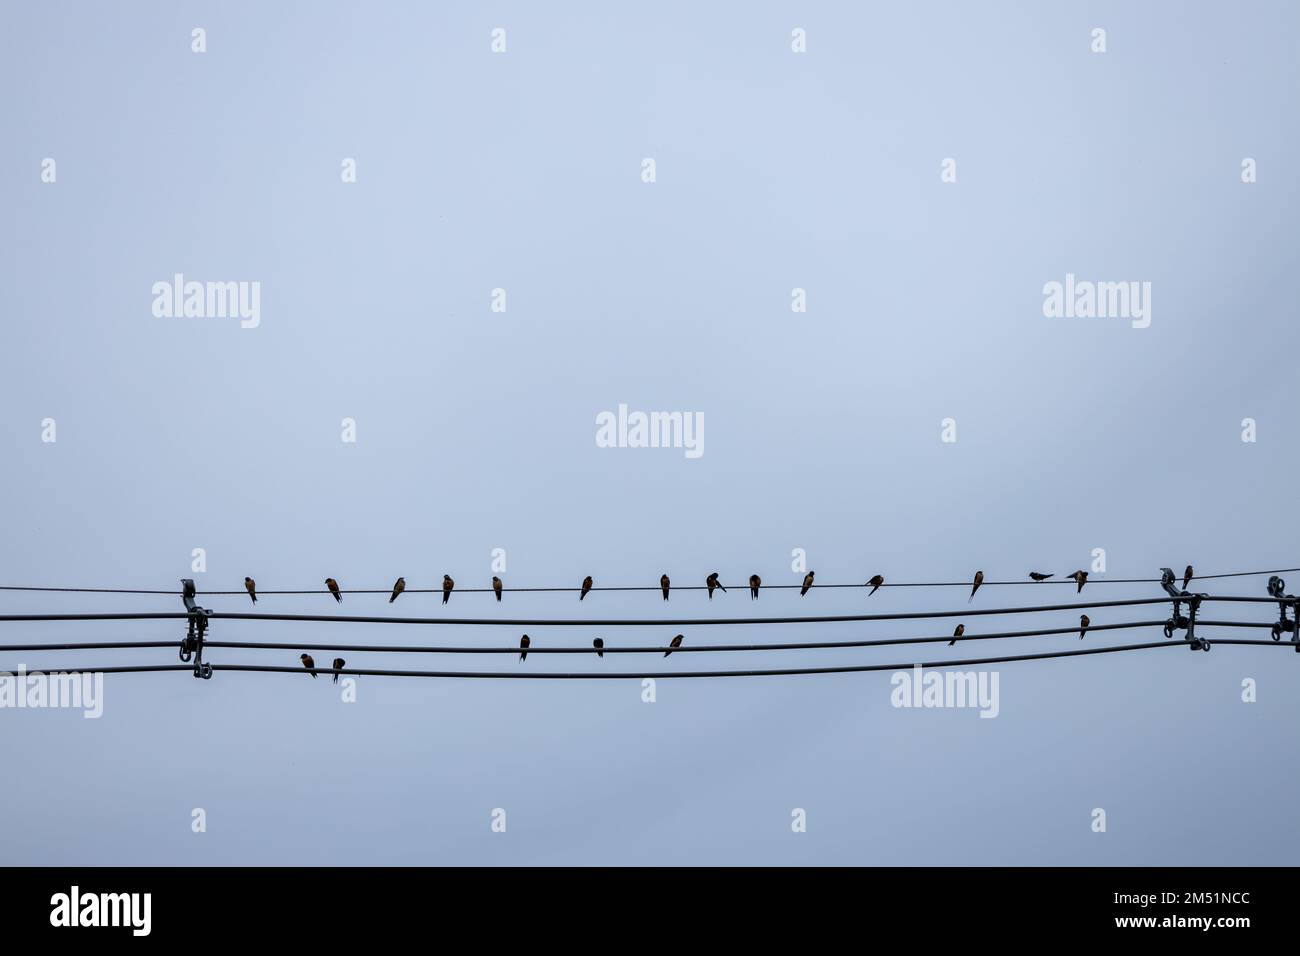 Plusieurs petits oiseaux perchés sur des câbles d'alimentation simulant un pentagramme avec des notes musicales. Banque D'Images